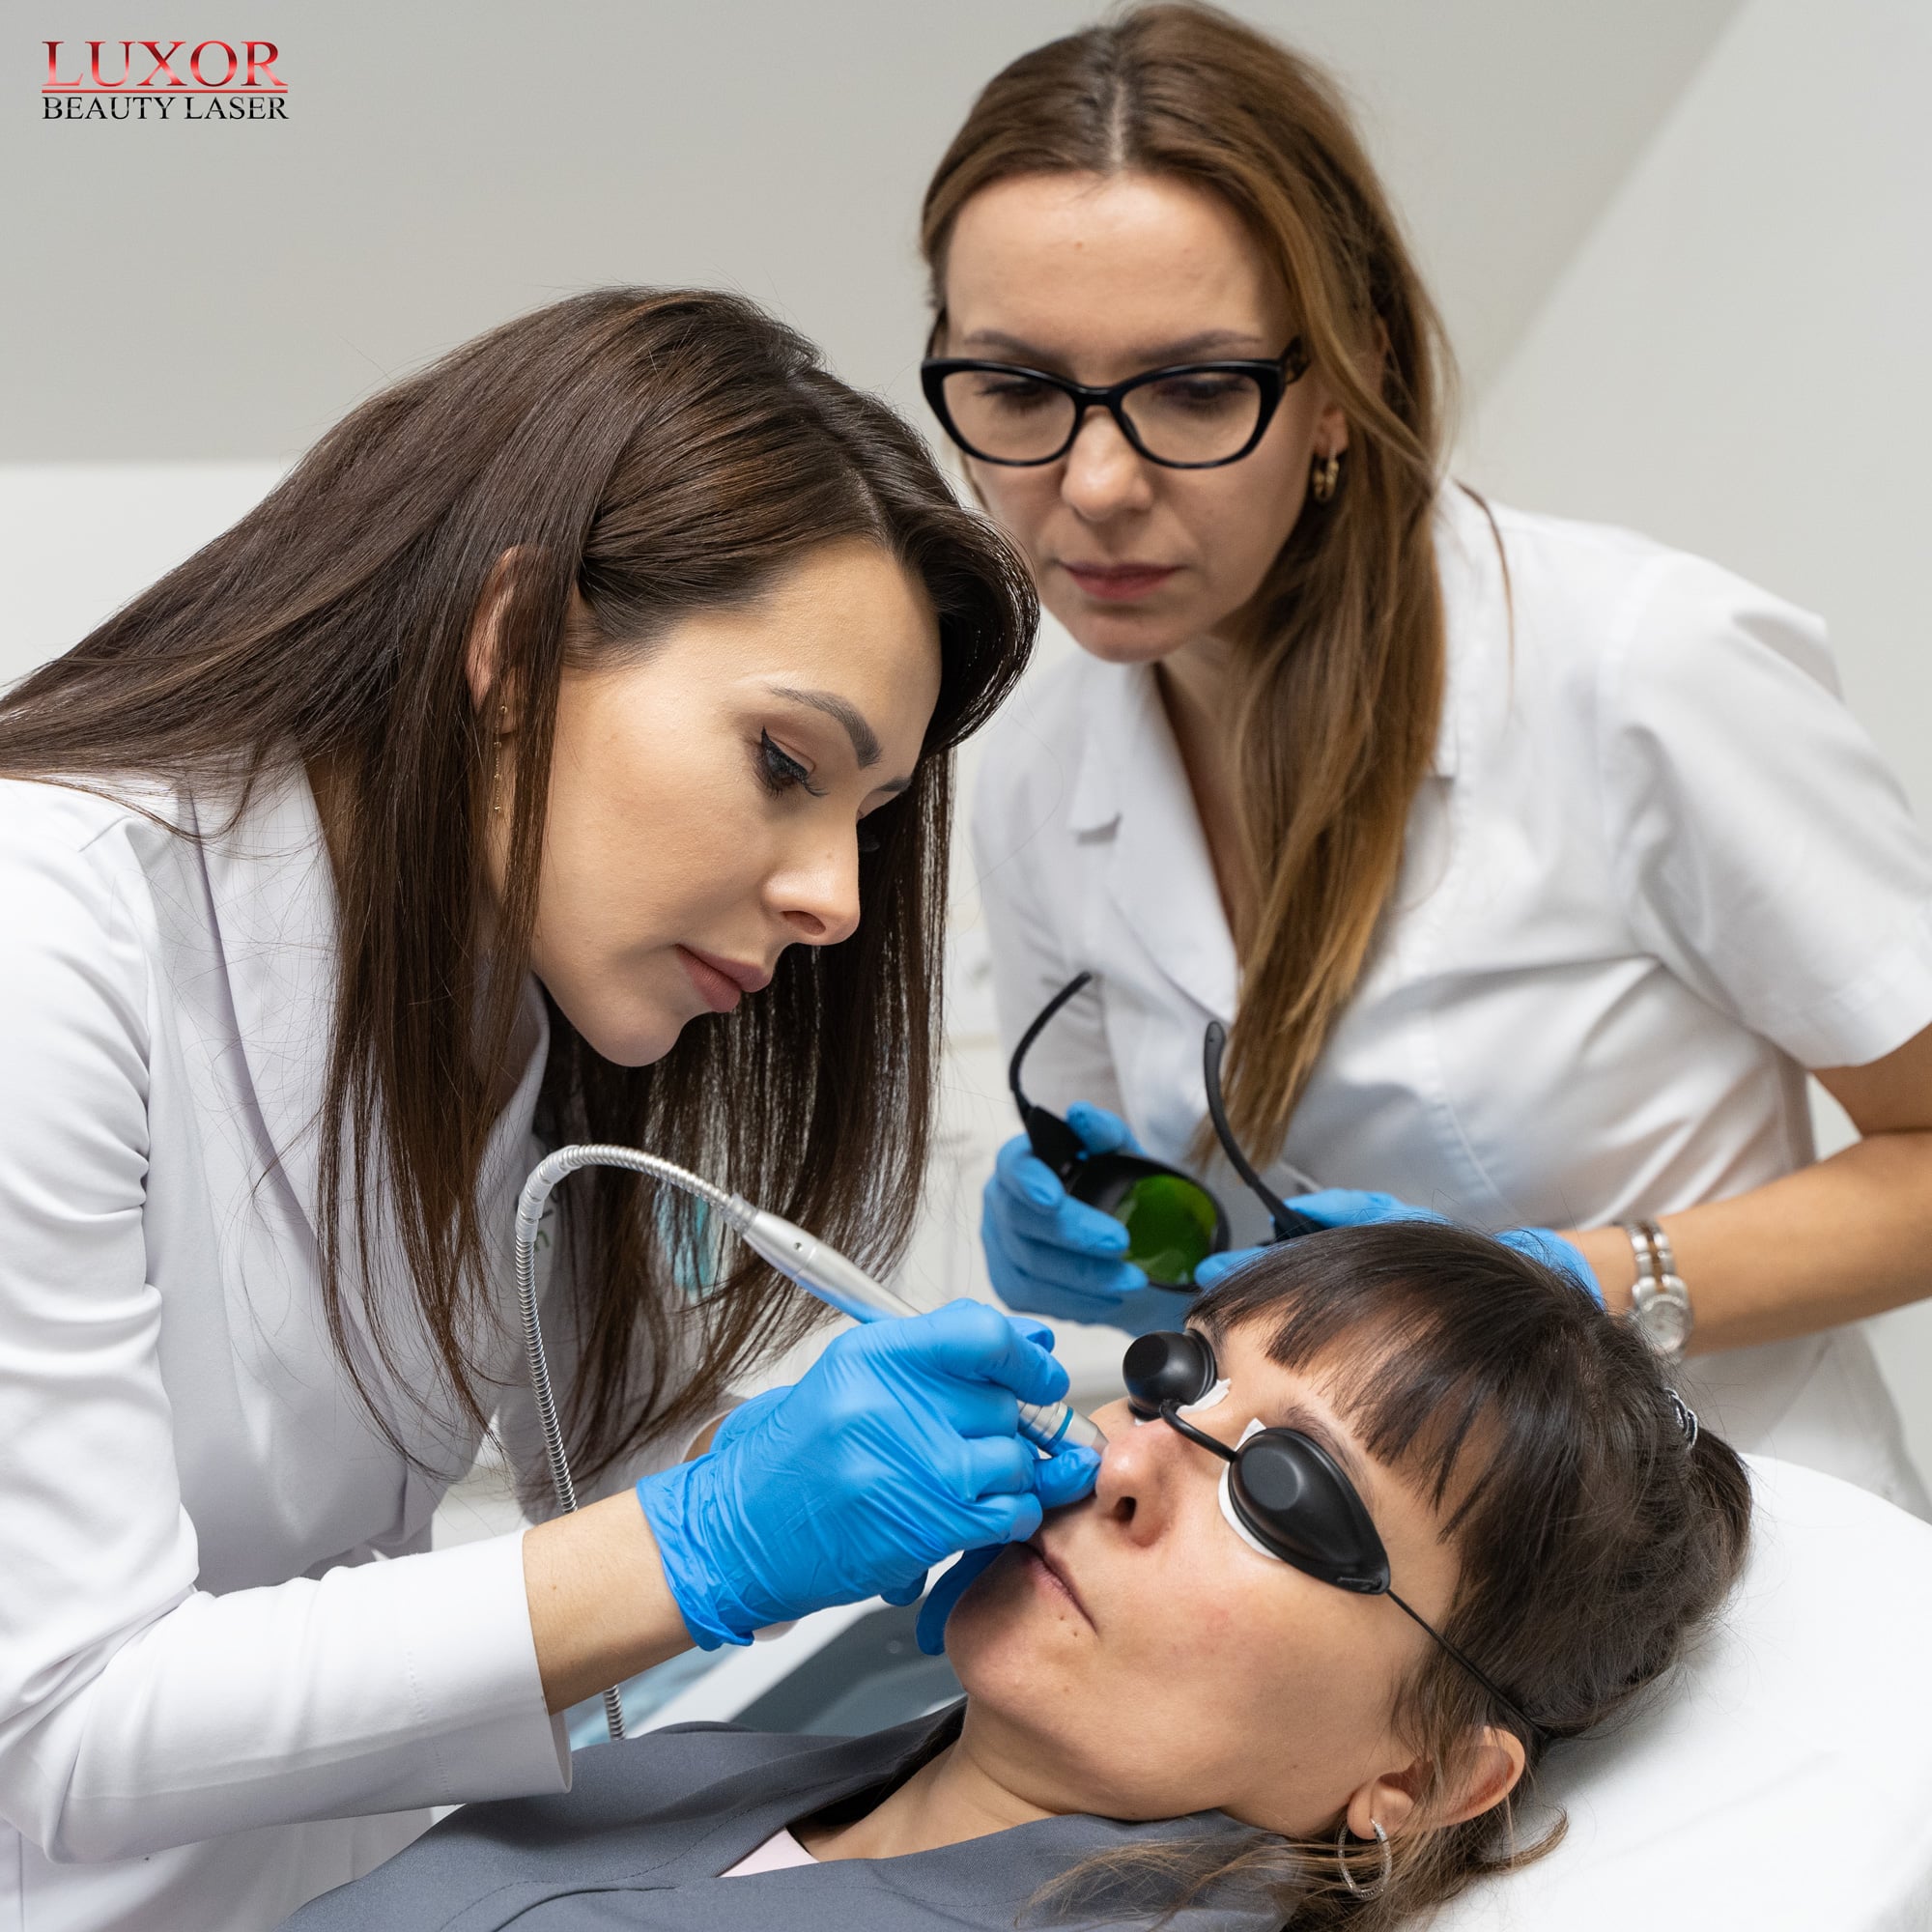 Nasz kurs kosmetyczny Luxor Beauty Laser skupia się na przekazaniu wyczerpujących informacji teoretycznych i praktycznych